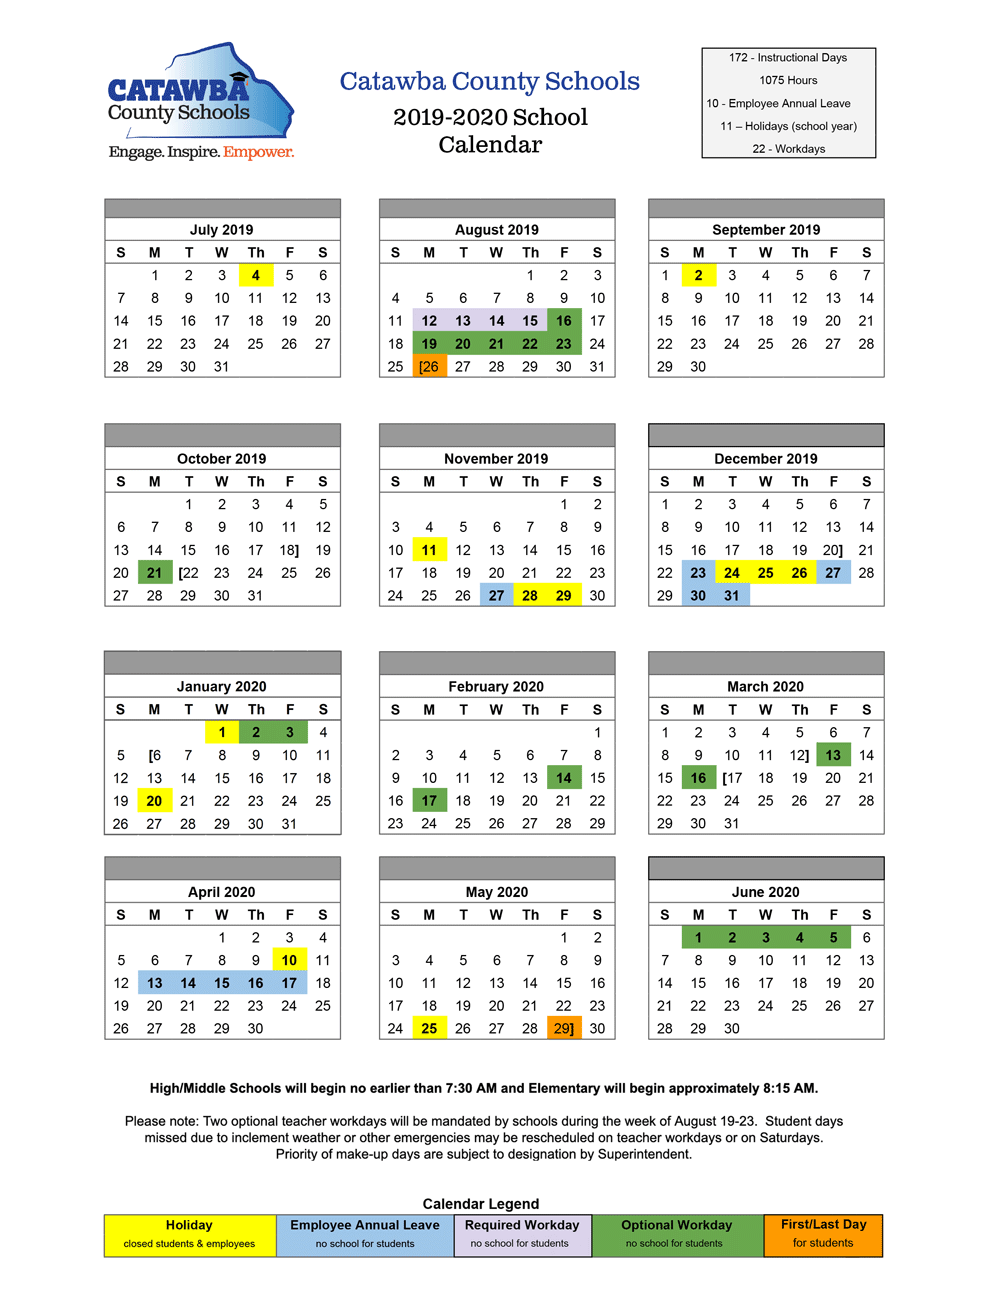 2019-20 CCS Calendar - CATAWBA COUNTY SCHOOLS